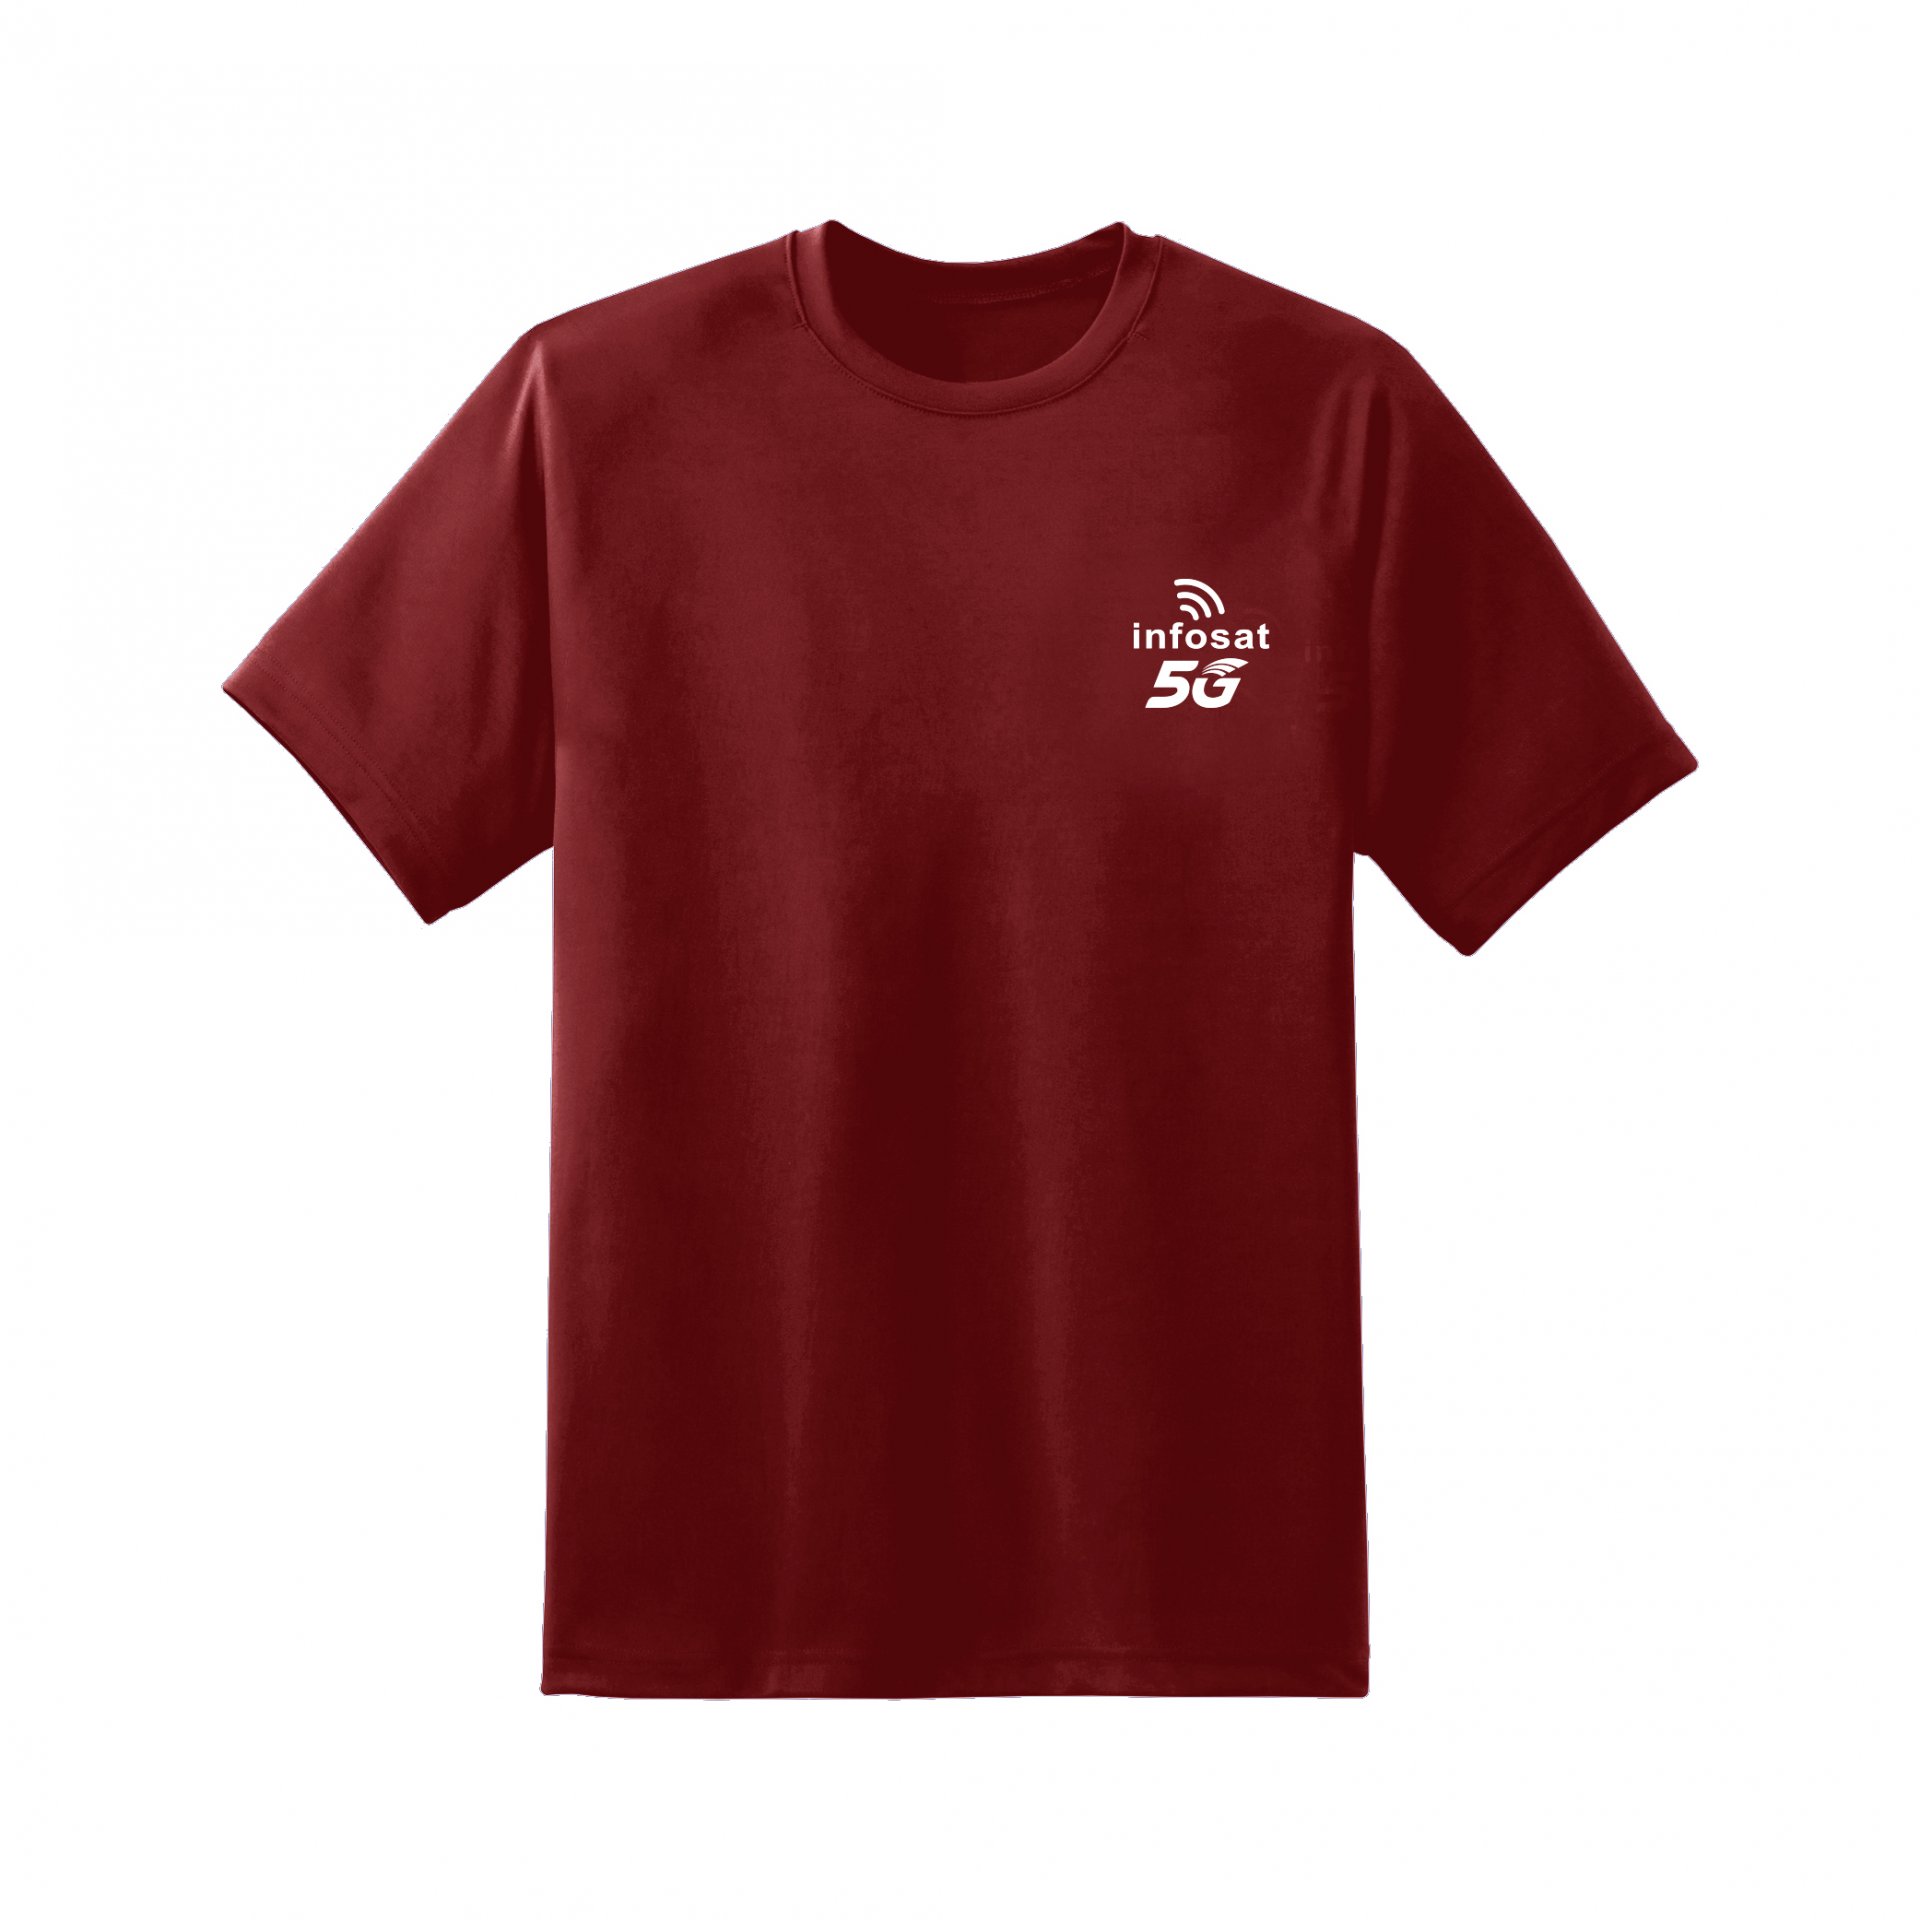 INFOSAT 5G T-Shirt - Red